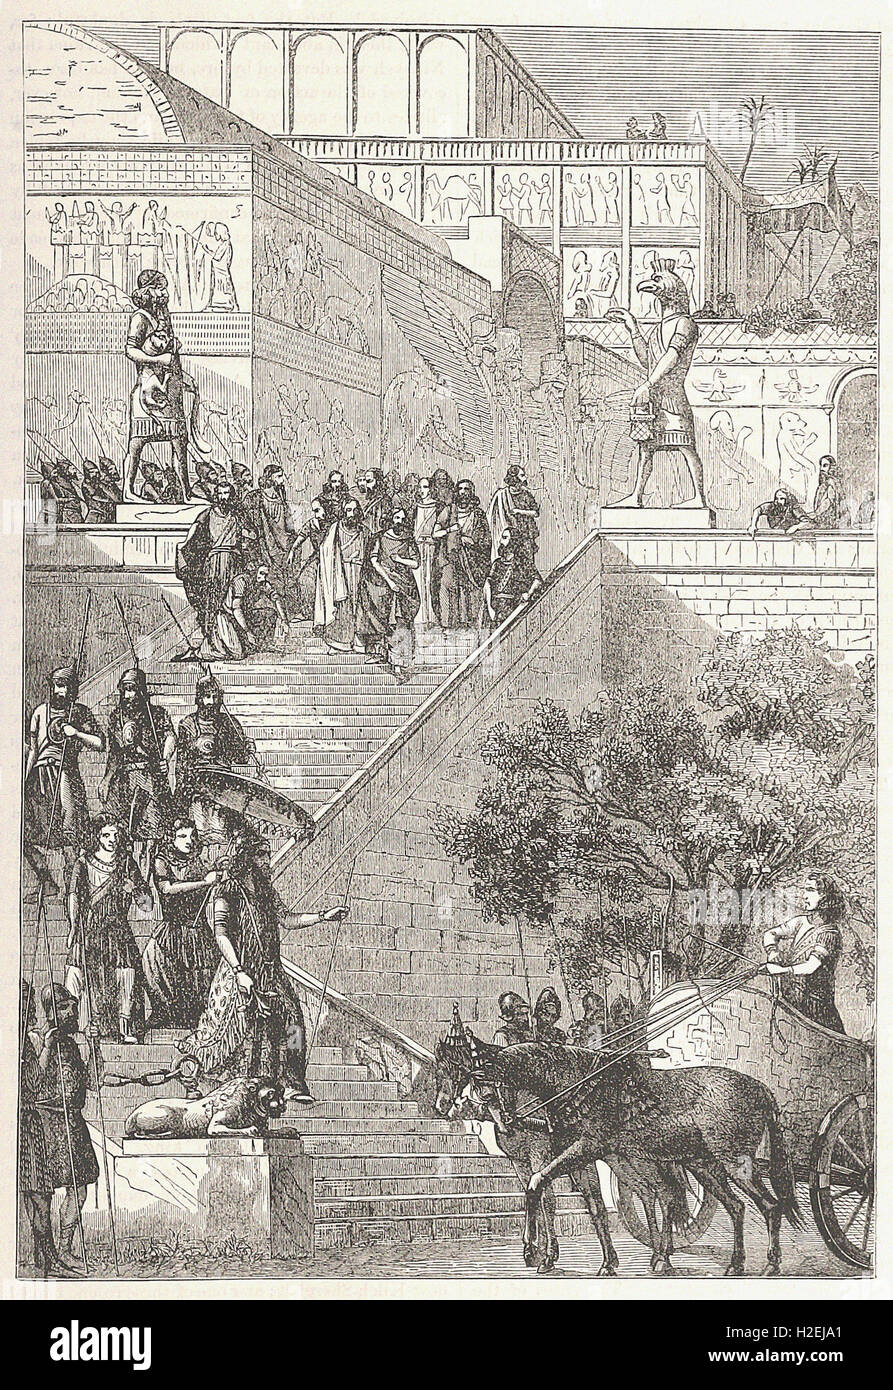 La PALAIS DE KOUYUNJIK, restauré - de 'Cassell's Illustrated Histoire universelle" - 1882 Banque D'Images